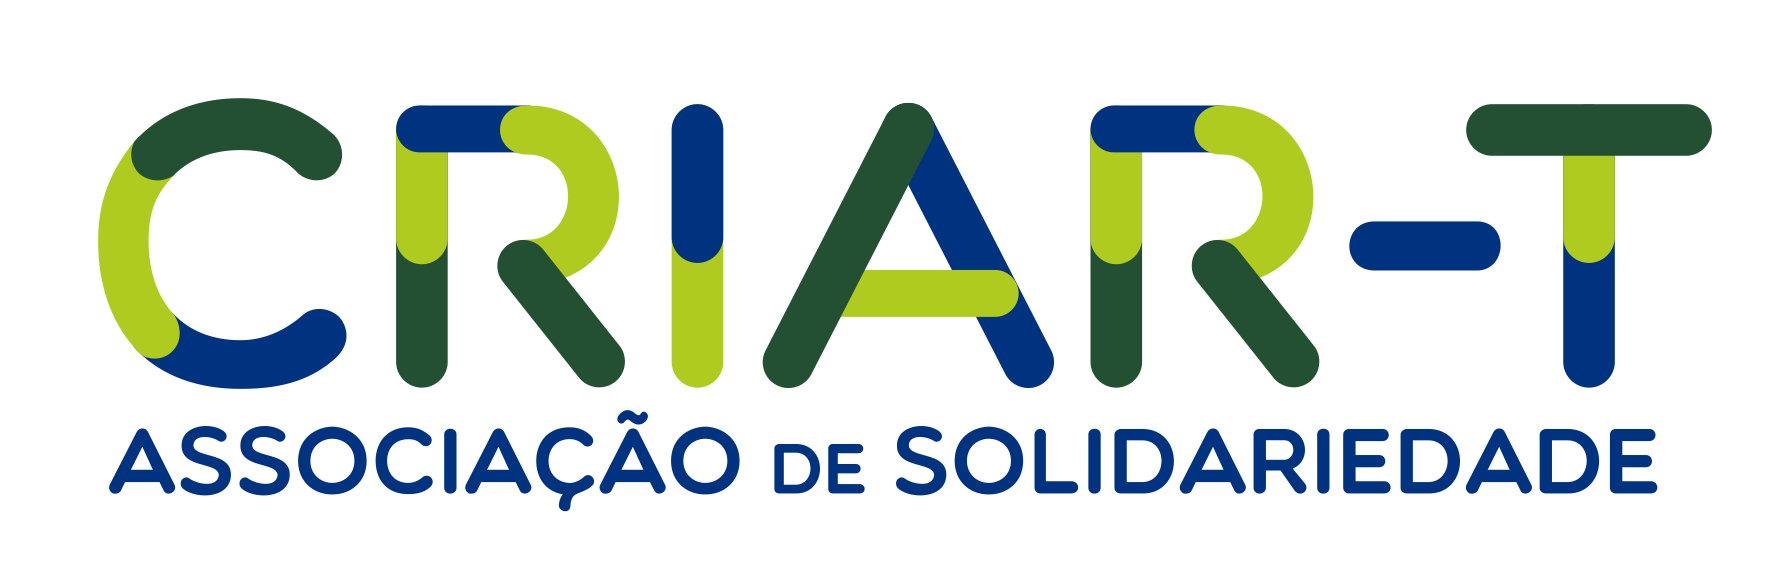 CRIAR-T Associação de Solidariedade